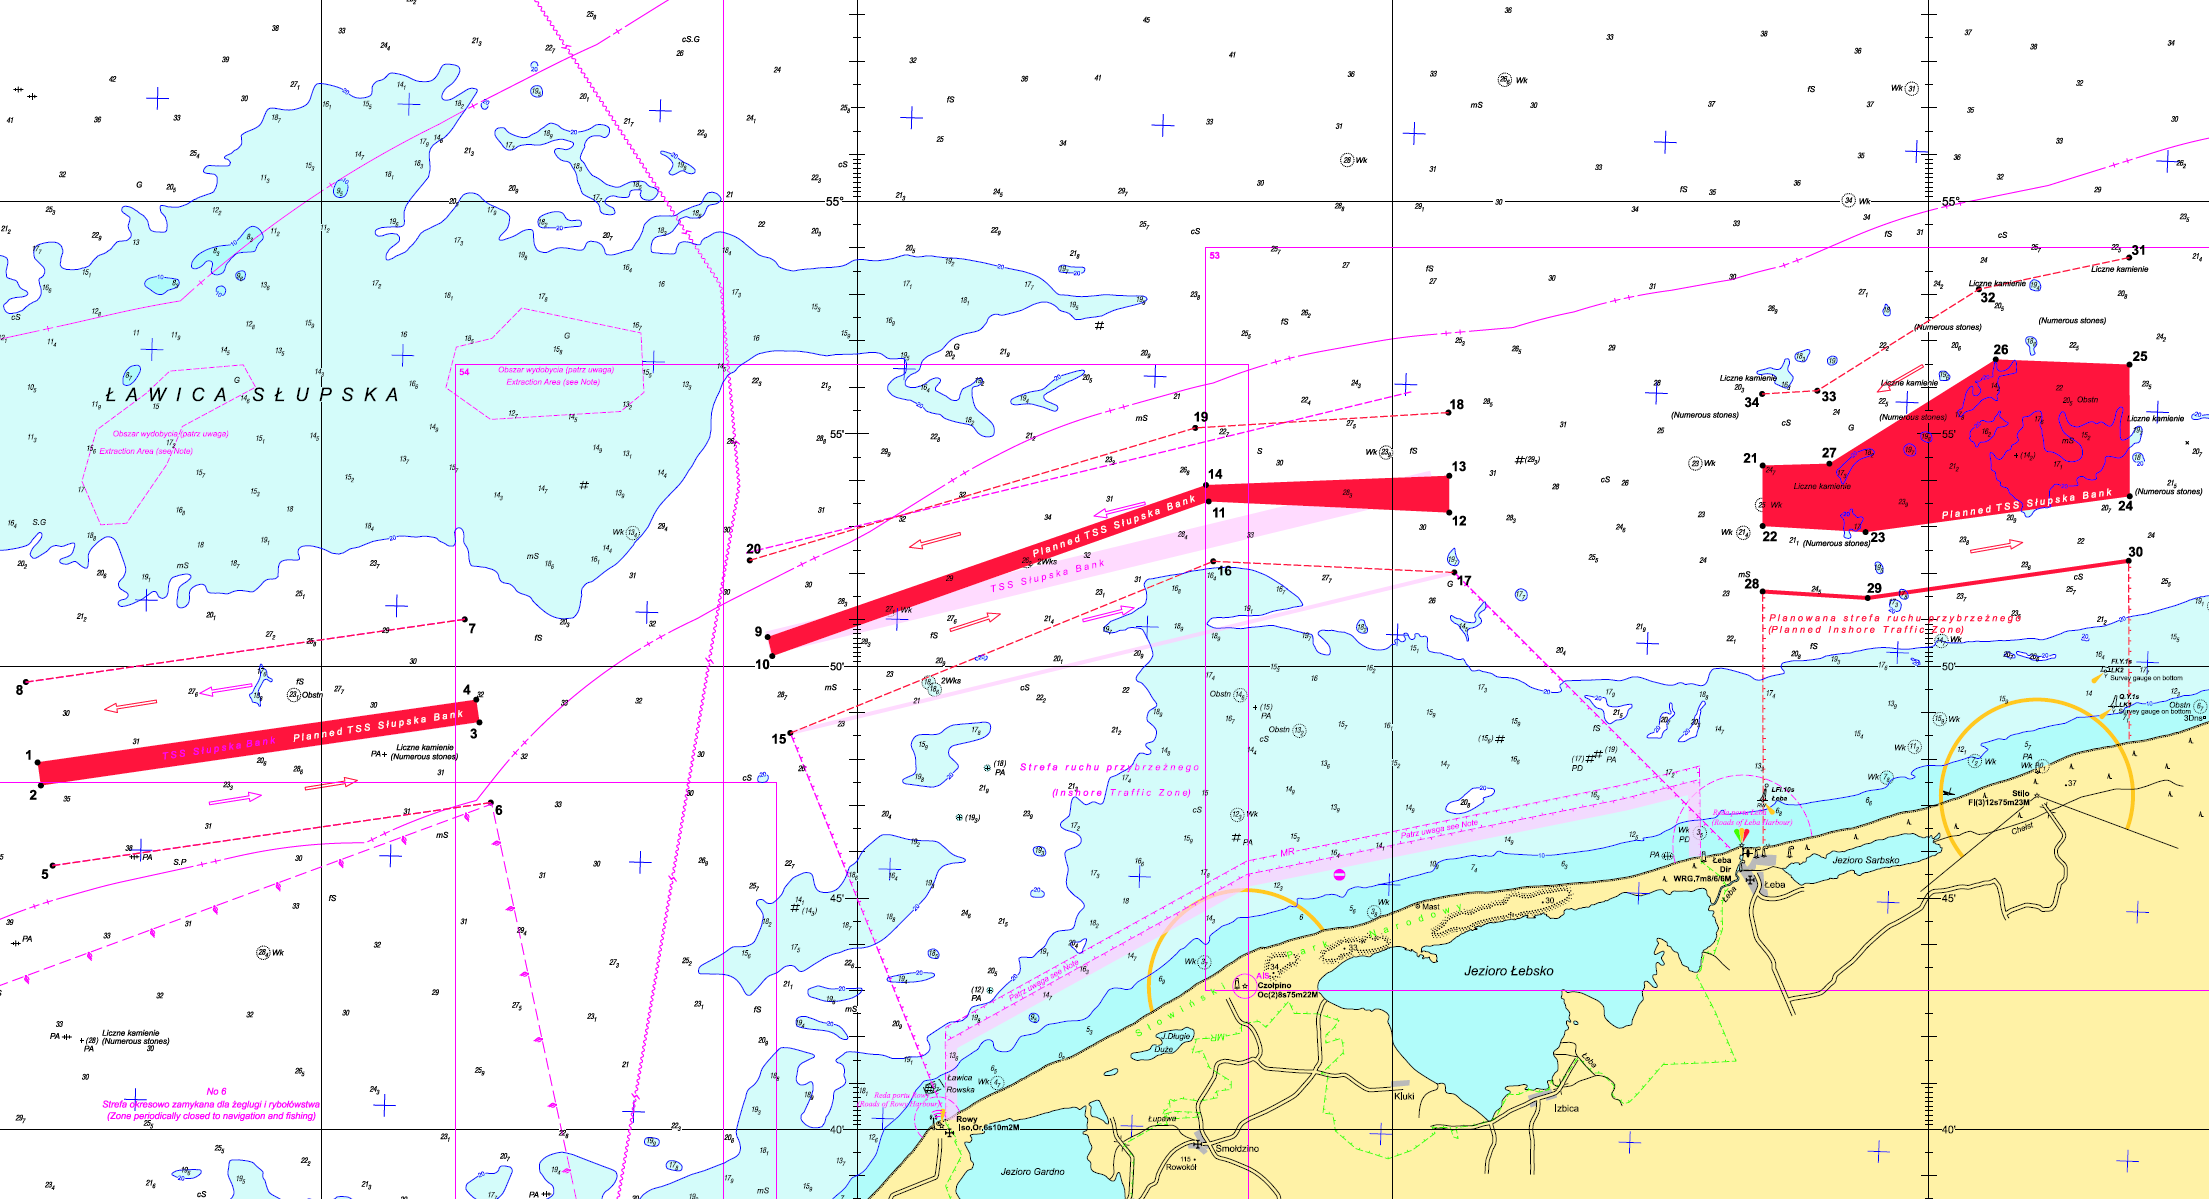 Na tle mapy morskiej ( z zaznaczonymi głębokościami) kolorem czerwonym przedstawiano nowy system rozgraniczenia ruchu. W części centralnej TSS widać jasno purpurowy przebieg poprzedniej strefy rozgraniczenia ruchu. 